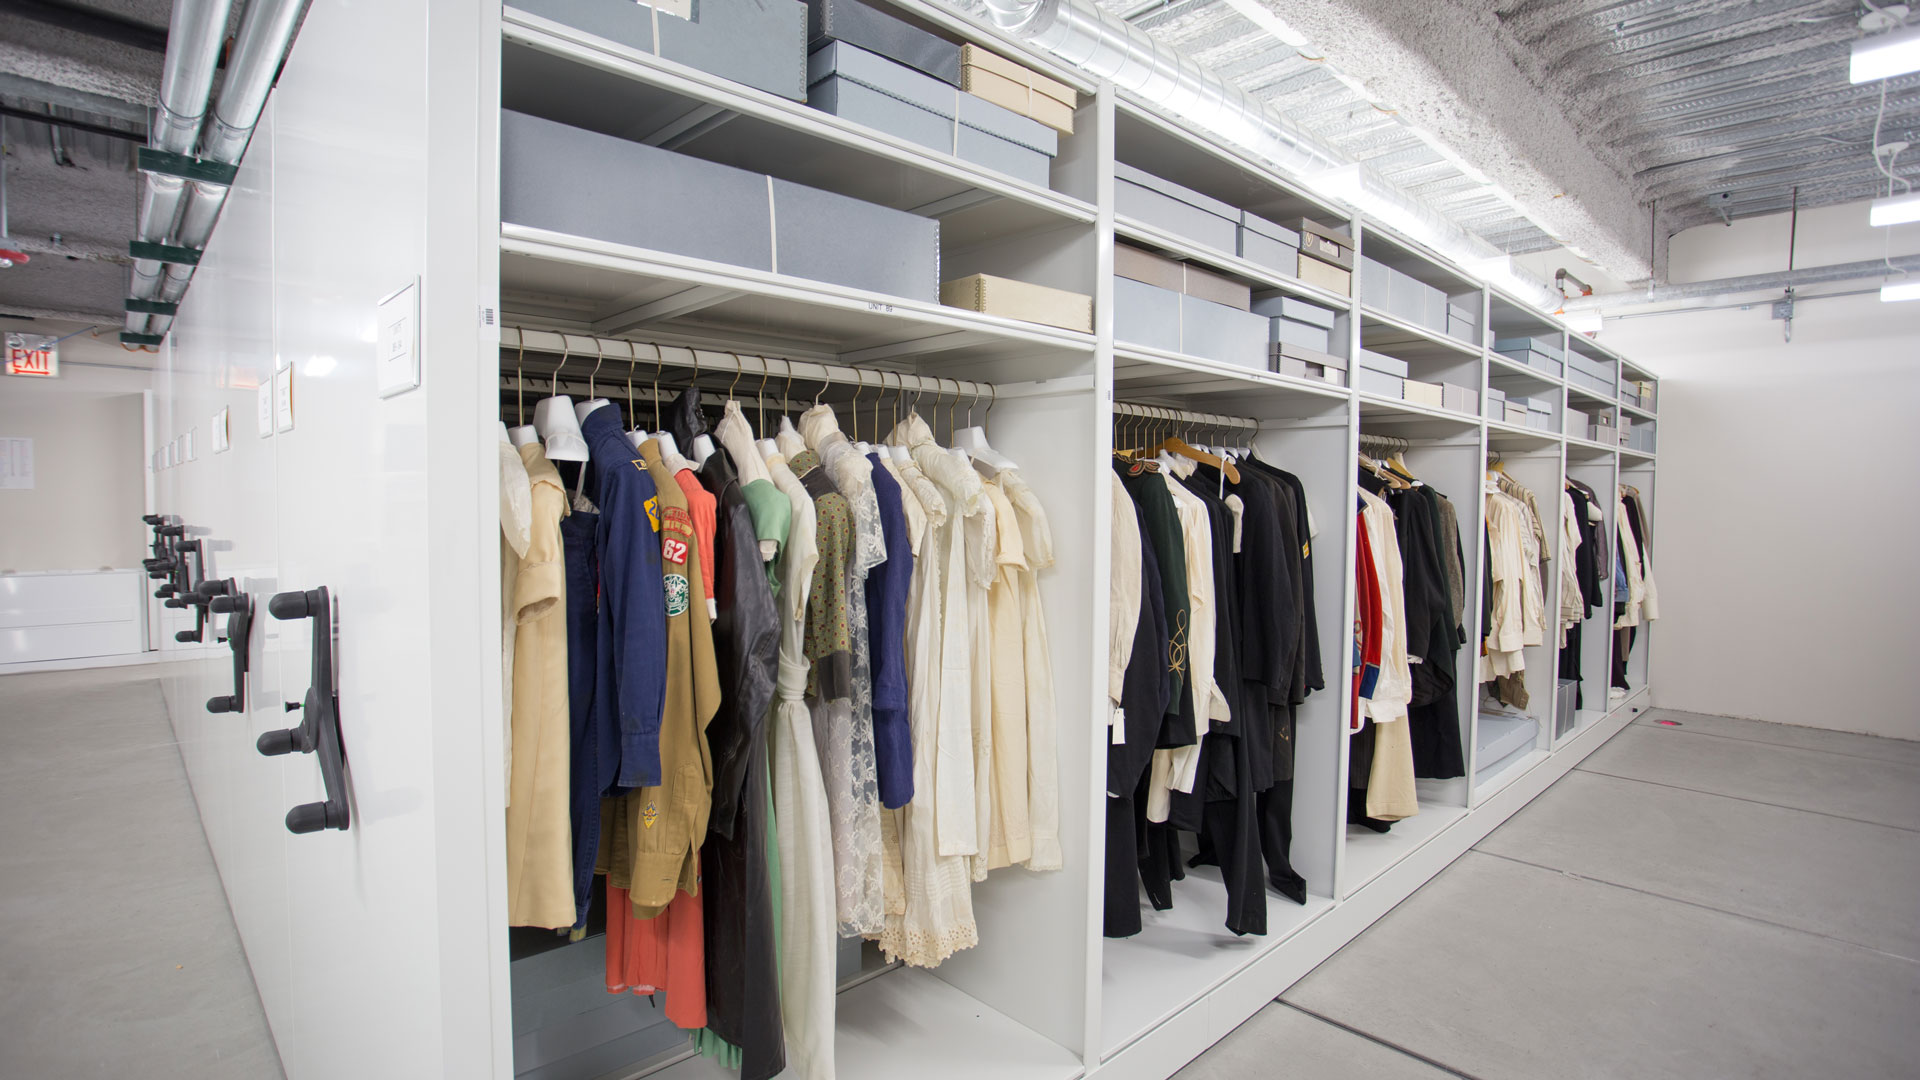 lhigh density museum wardrobe storage